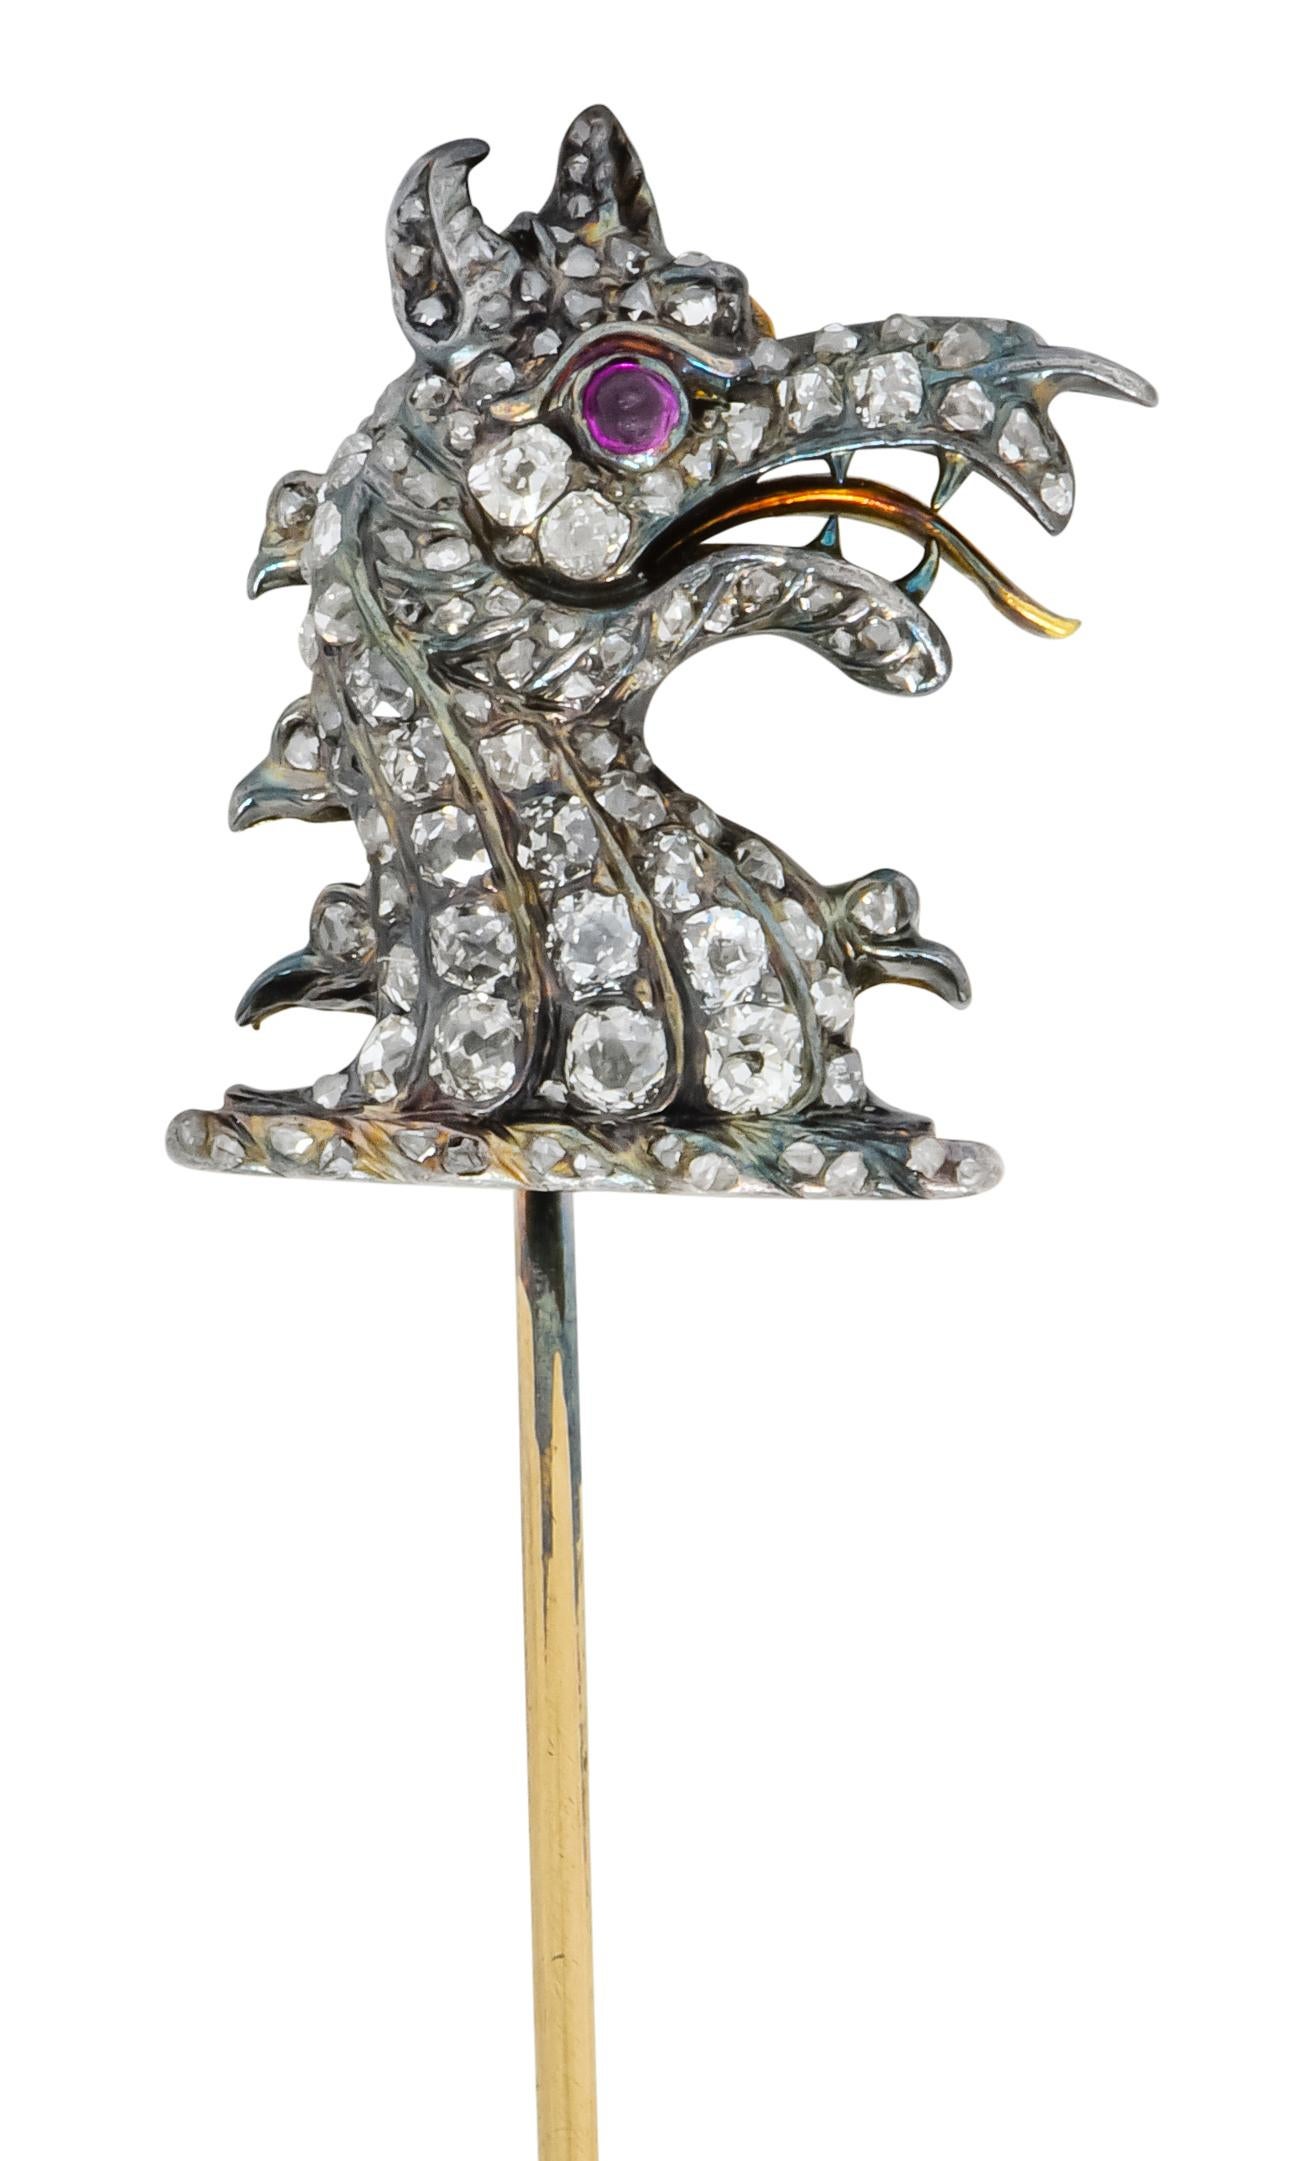 Darstellung eines wilden Drachens mit einem runden Auge aus einem Rubincabochon und einem aufgerissenen Maul mit scharfen Zähnen und einer Reptilienzunge

Perlenbesatz mit Diamanten im Rosenschliff in geriffelten Kanälen, die schuppige Haut